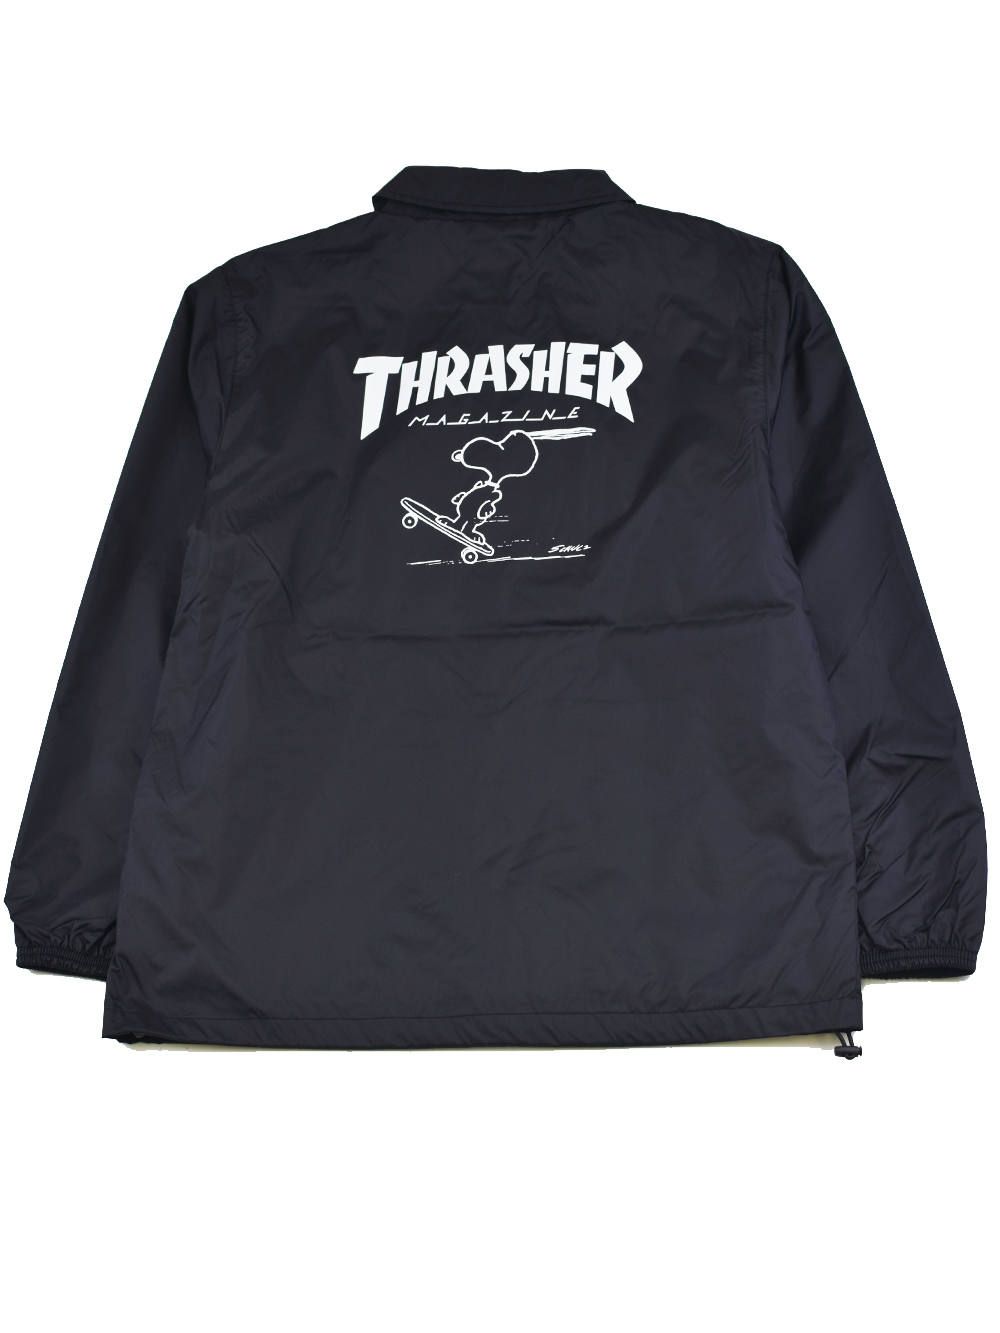 THRASHER MAG LOGO COACH JACKET ブラック L ロゴ